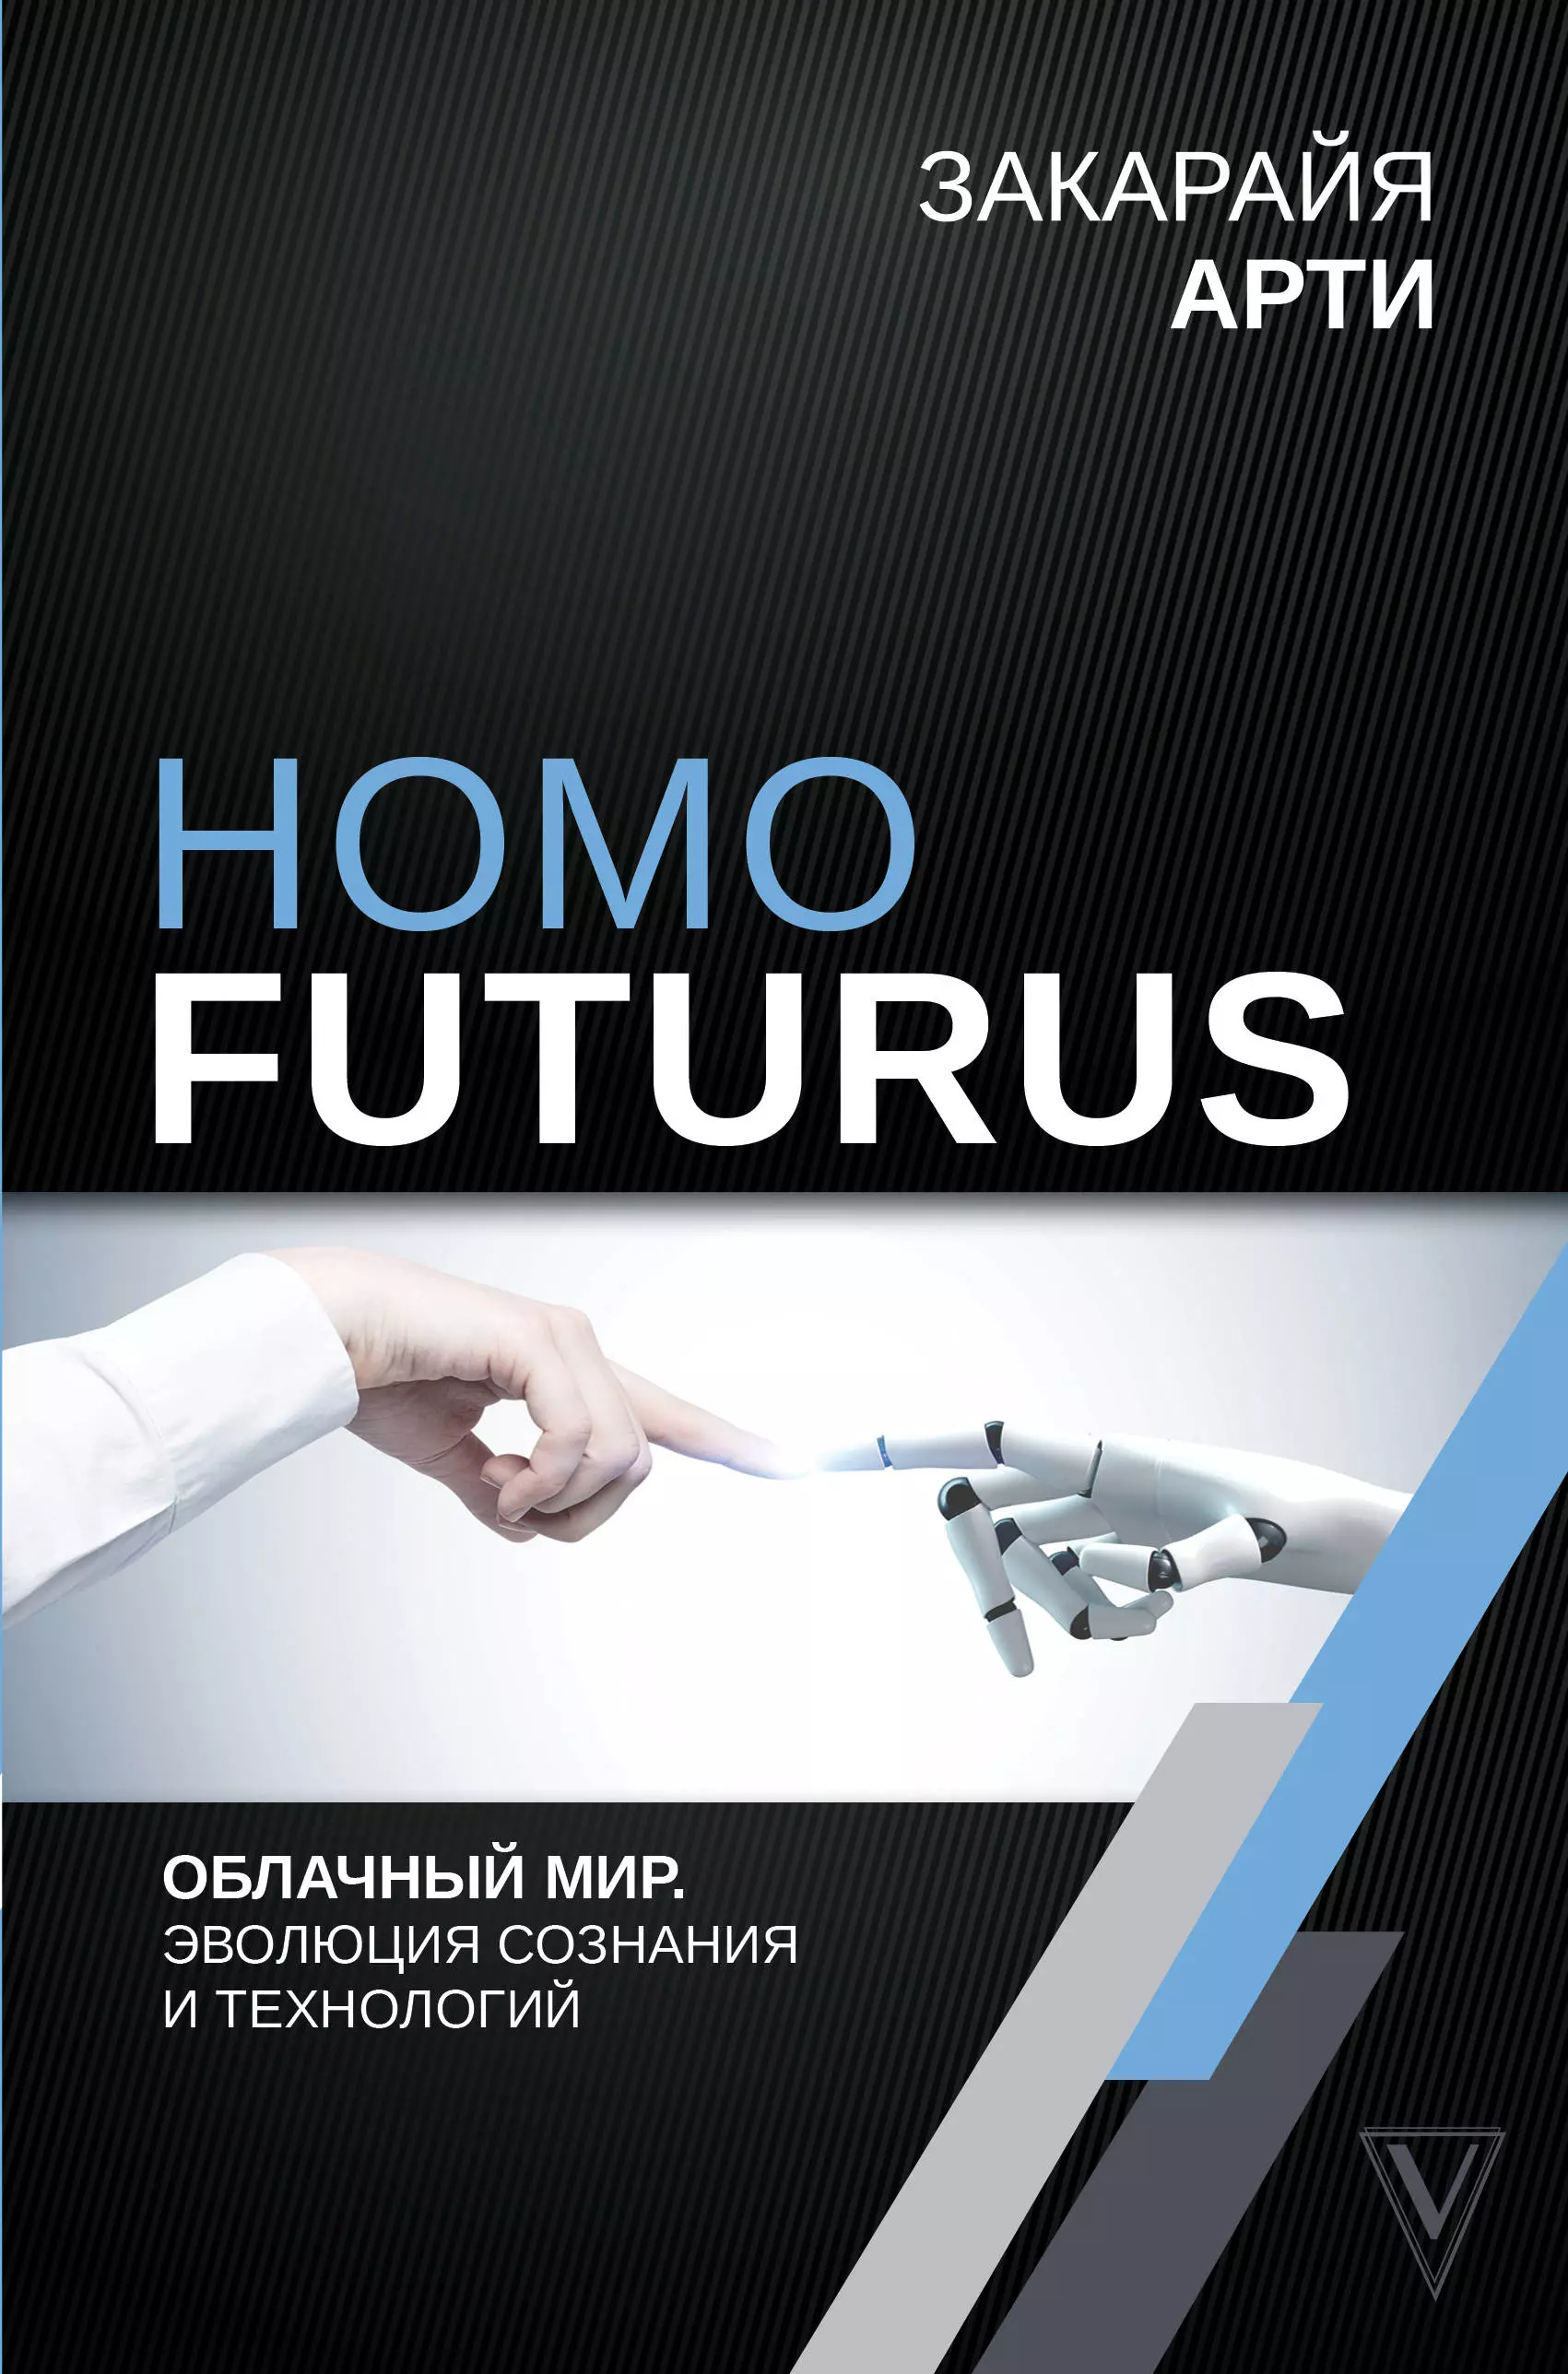 Арти Закарайя - Homo Futurus. Облачный Мир: эволюция сознания и технологий